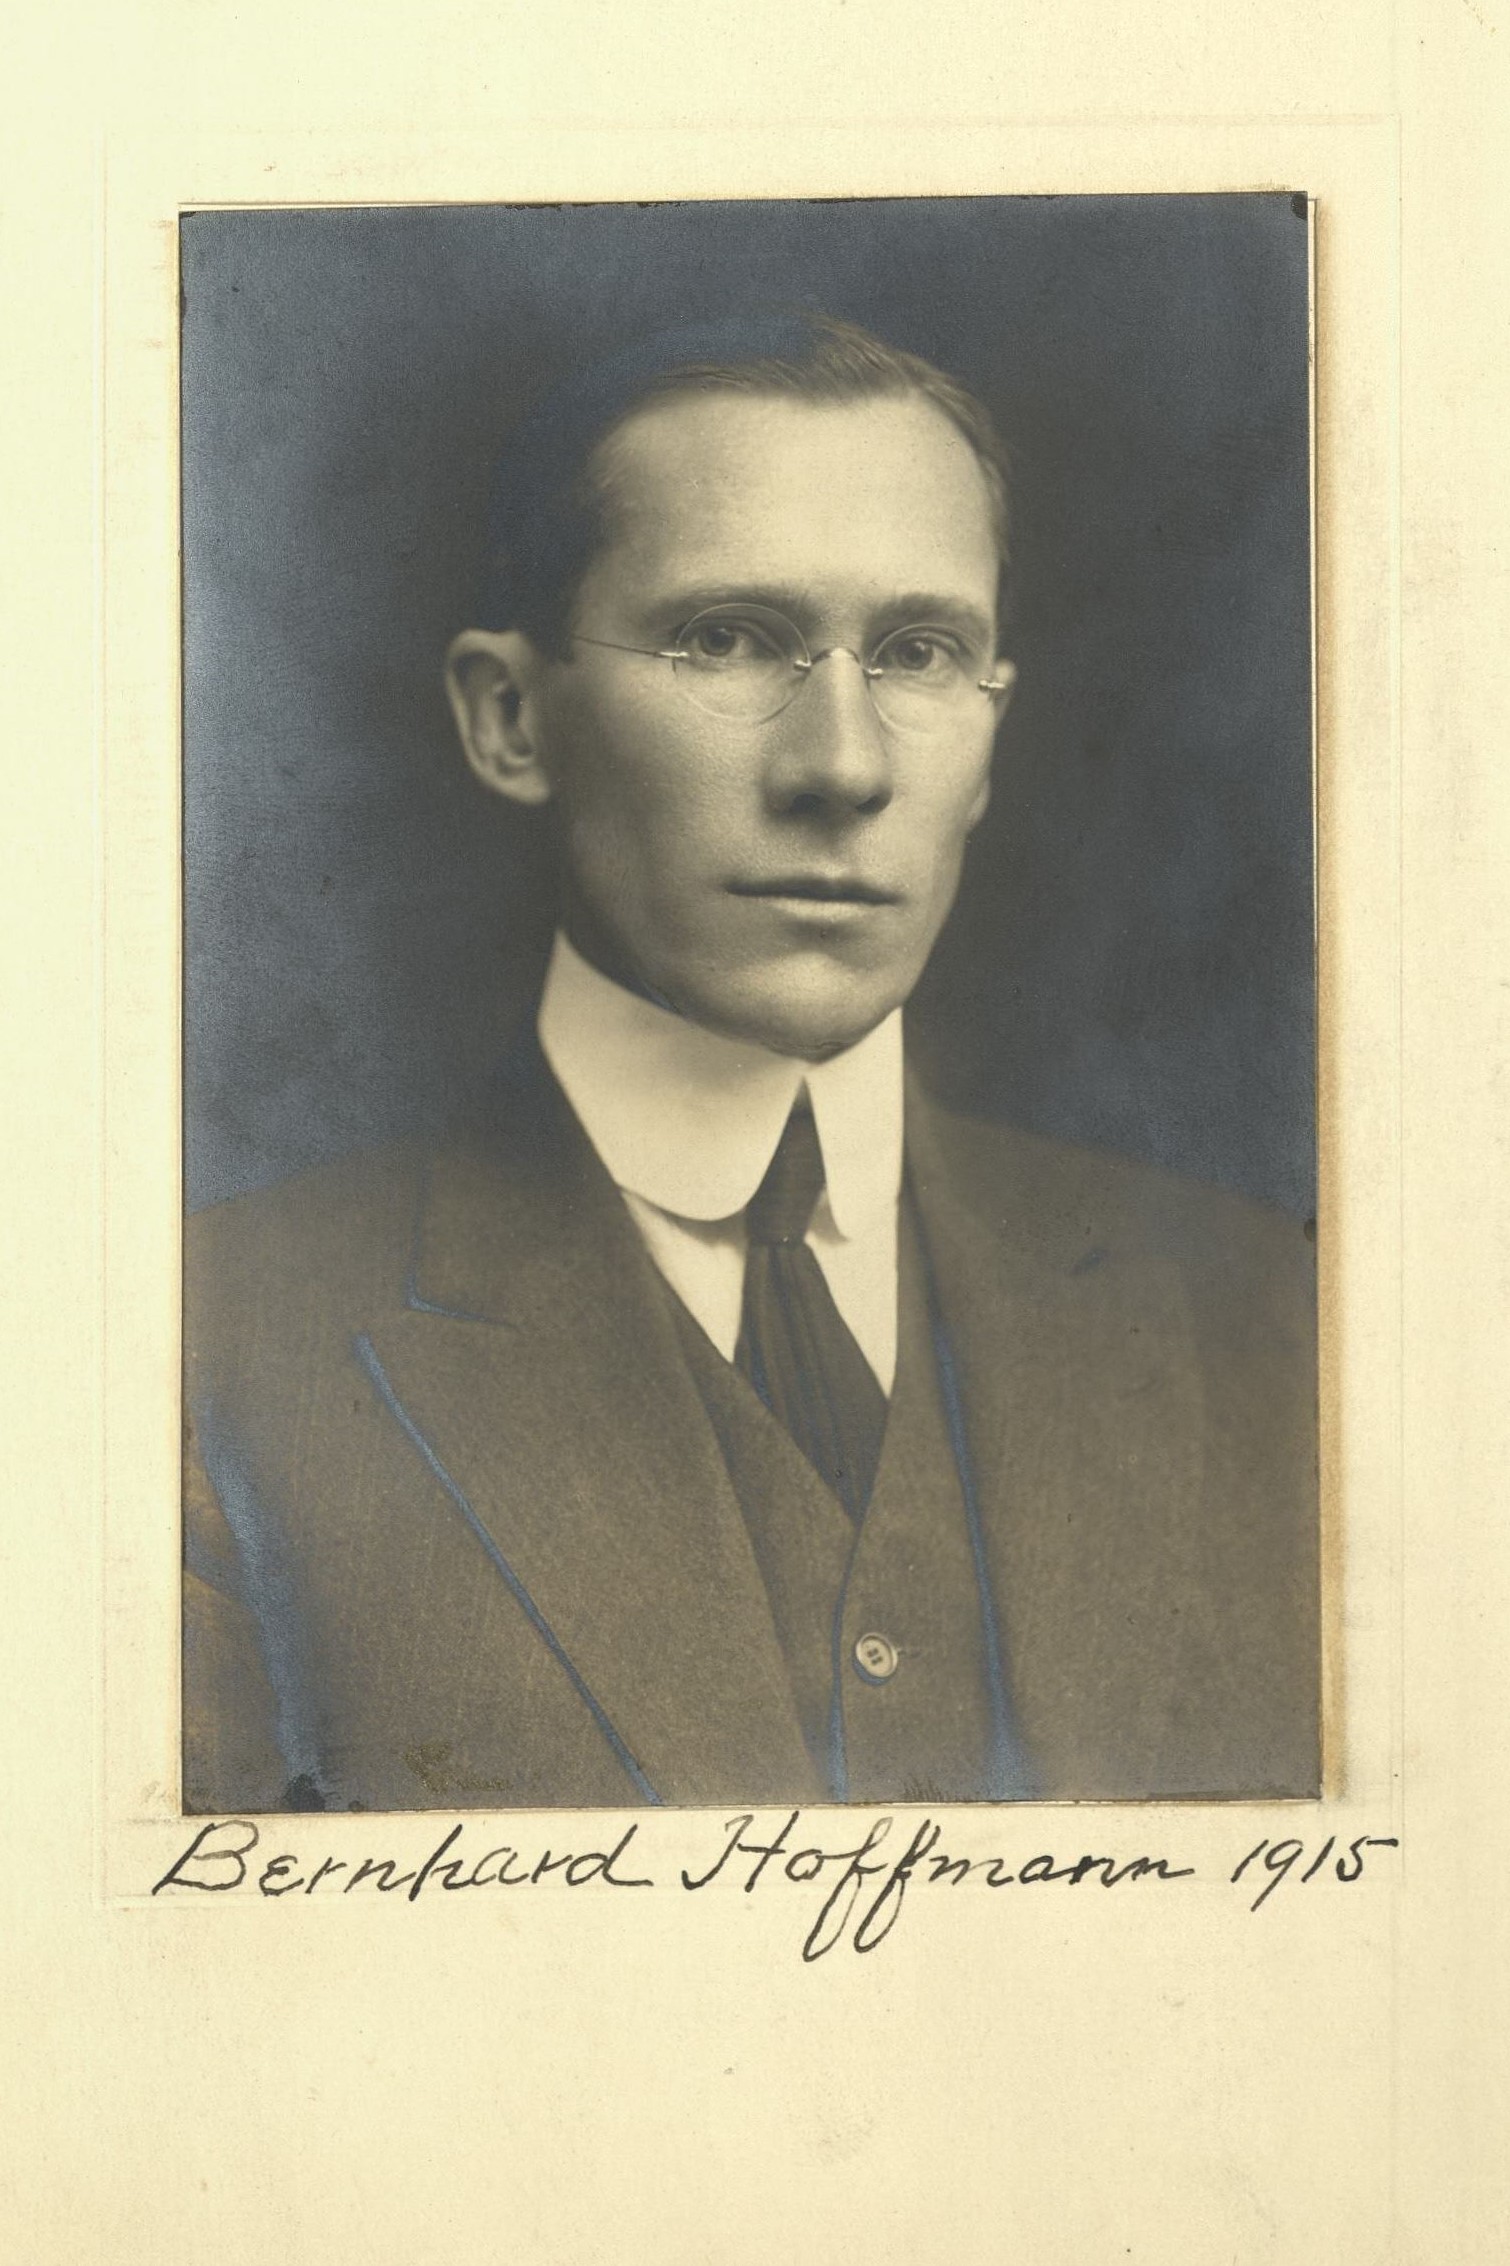 Member portrait of Bernard Hoffmann